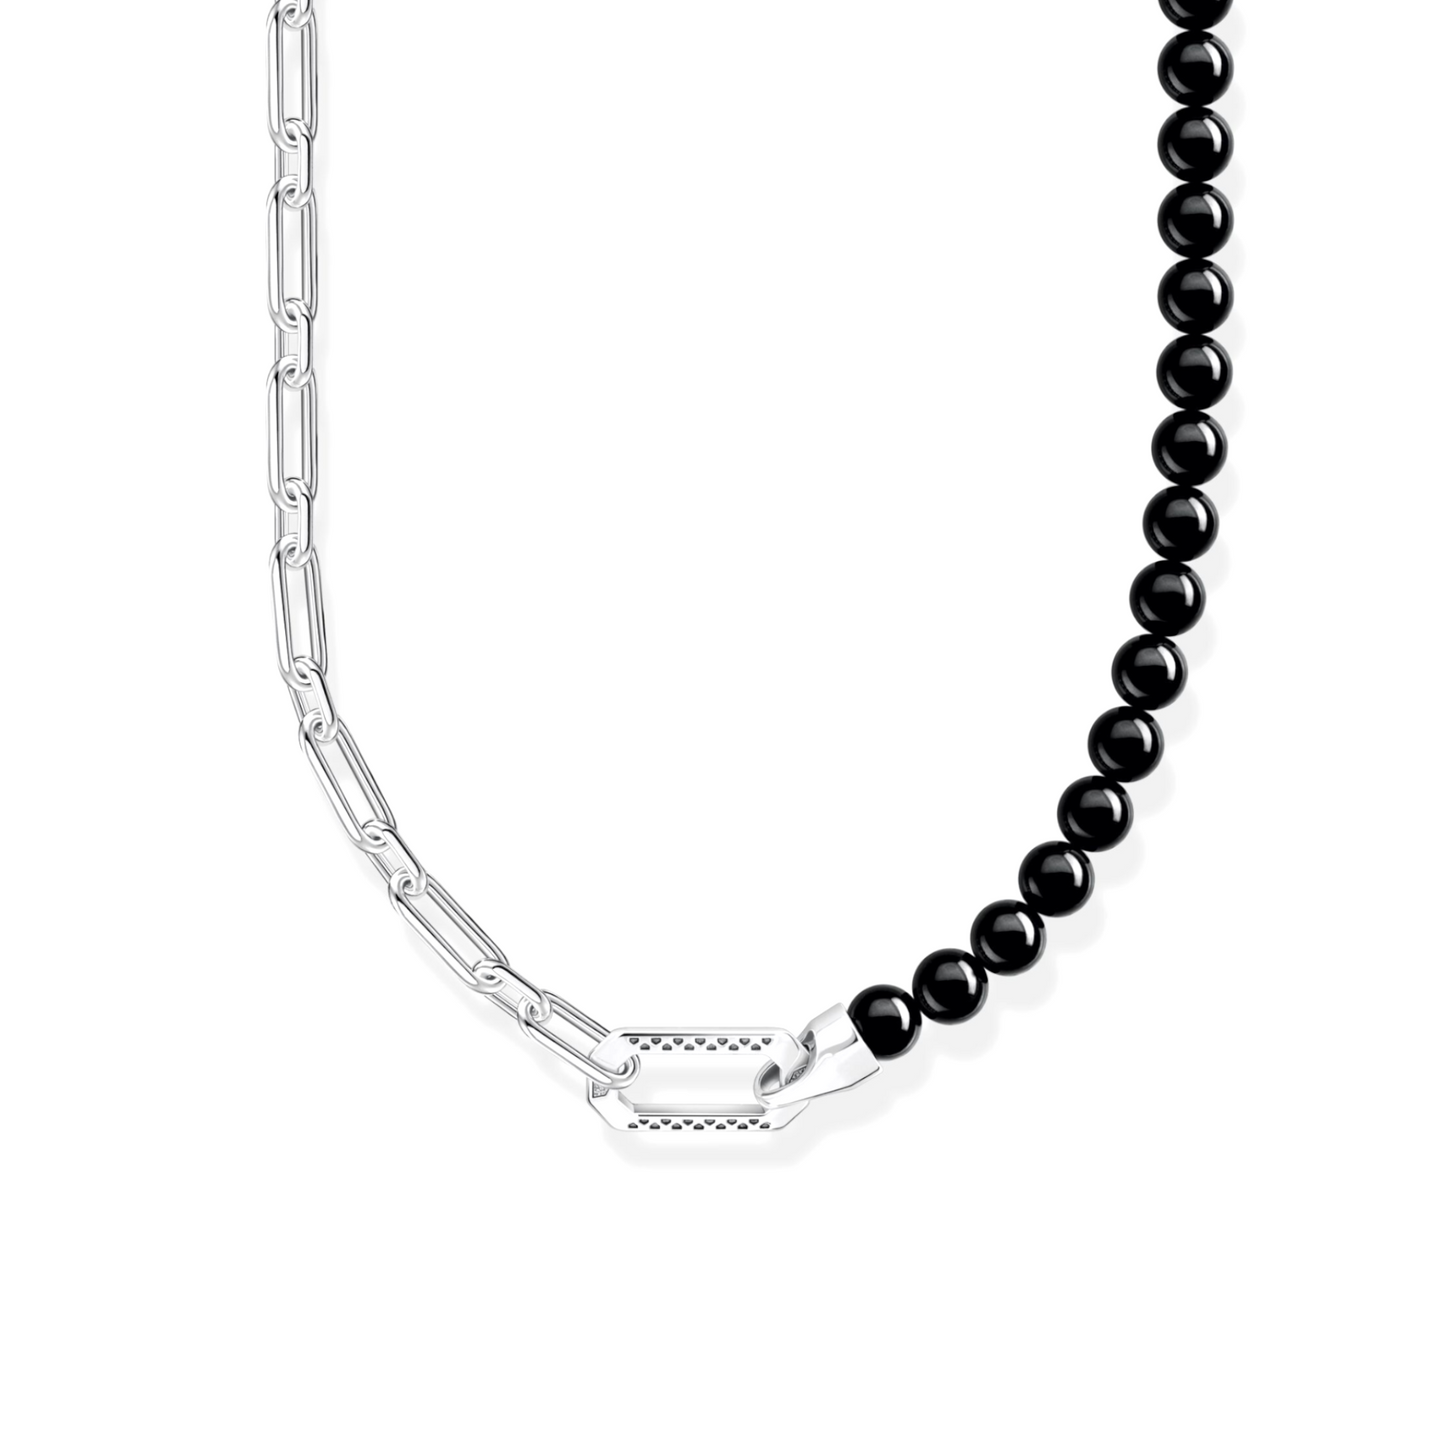 THOMAS SABO - Kette mit schwarzen Onyx-Beads und Kettengliedern Silber